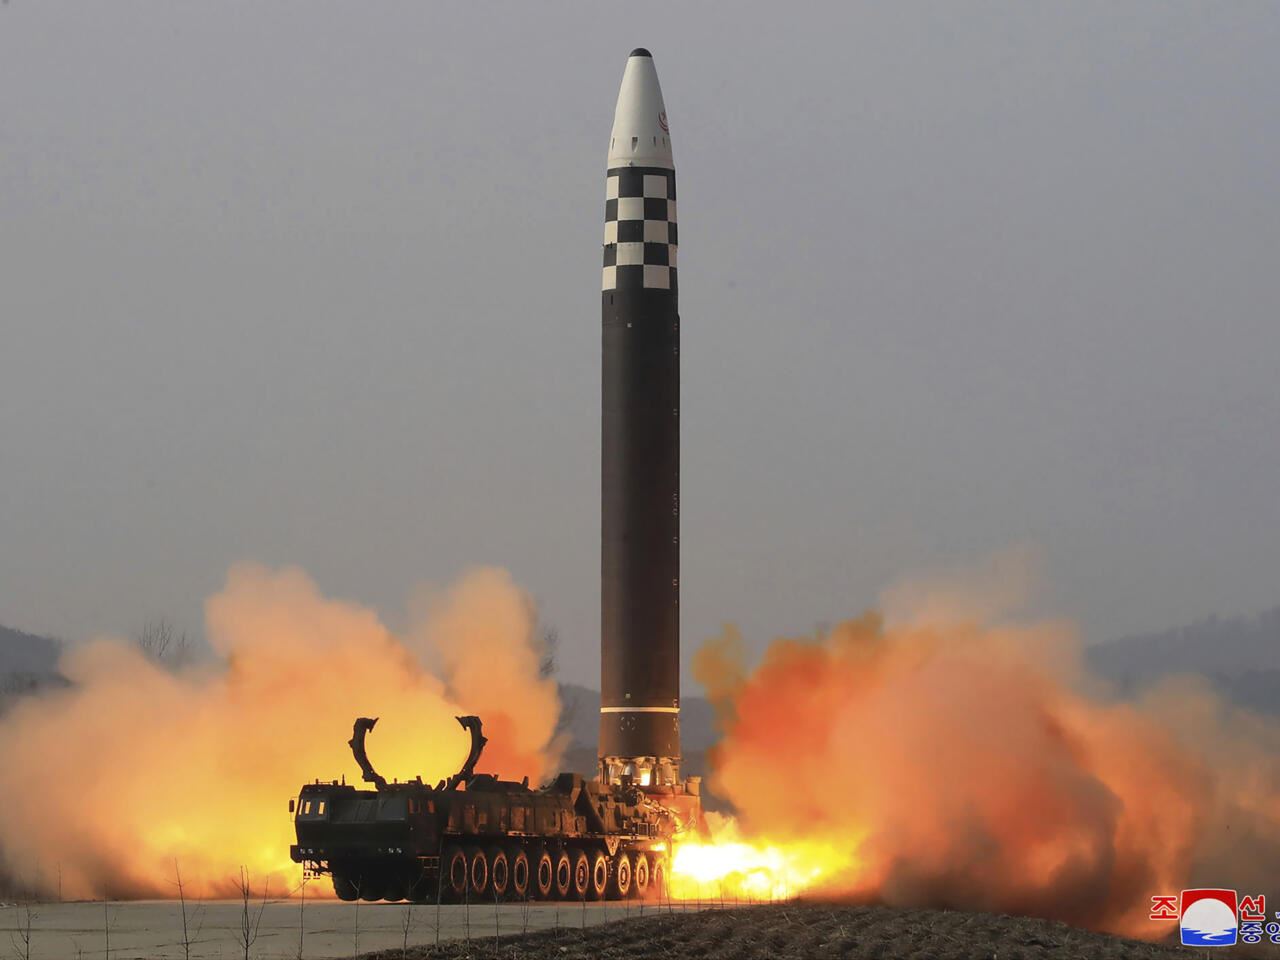 كوريا الشمالية تودع "هاريس" بصاروخ بالستي!